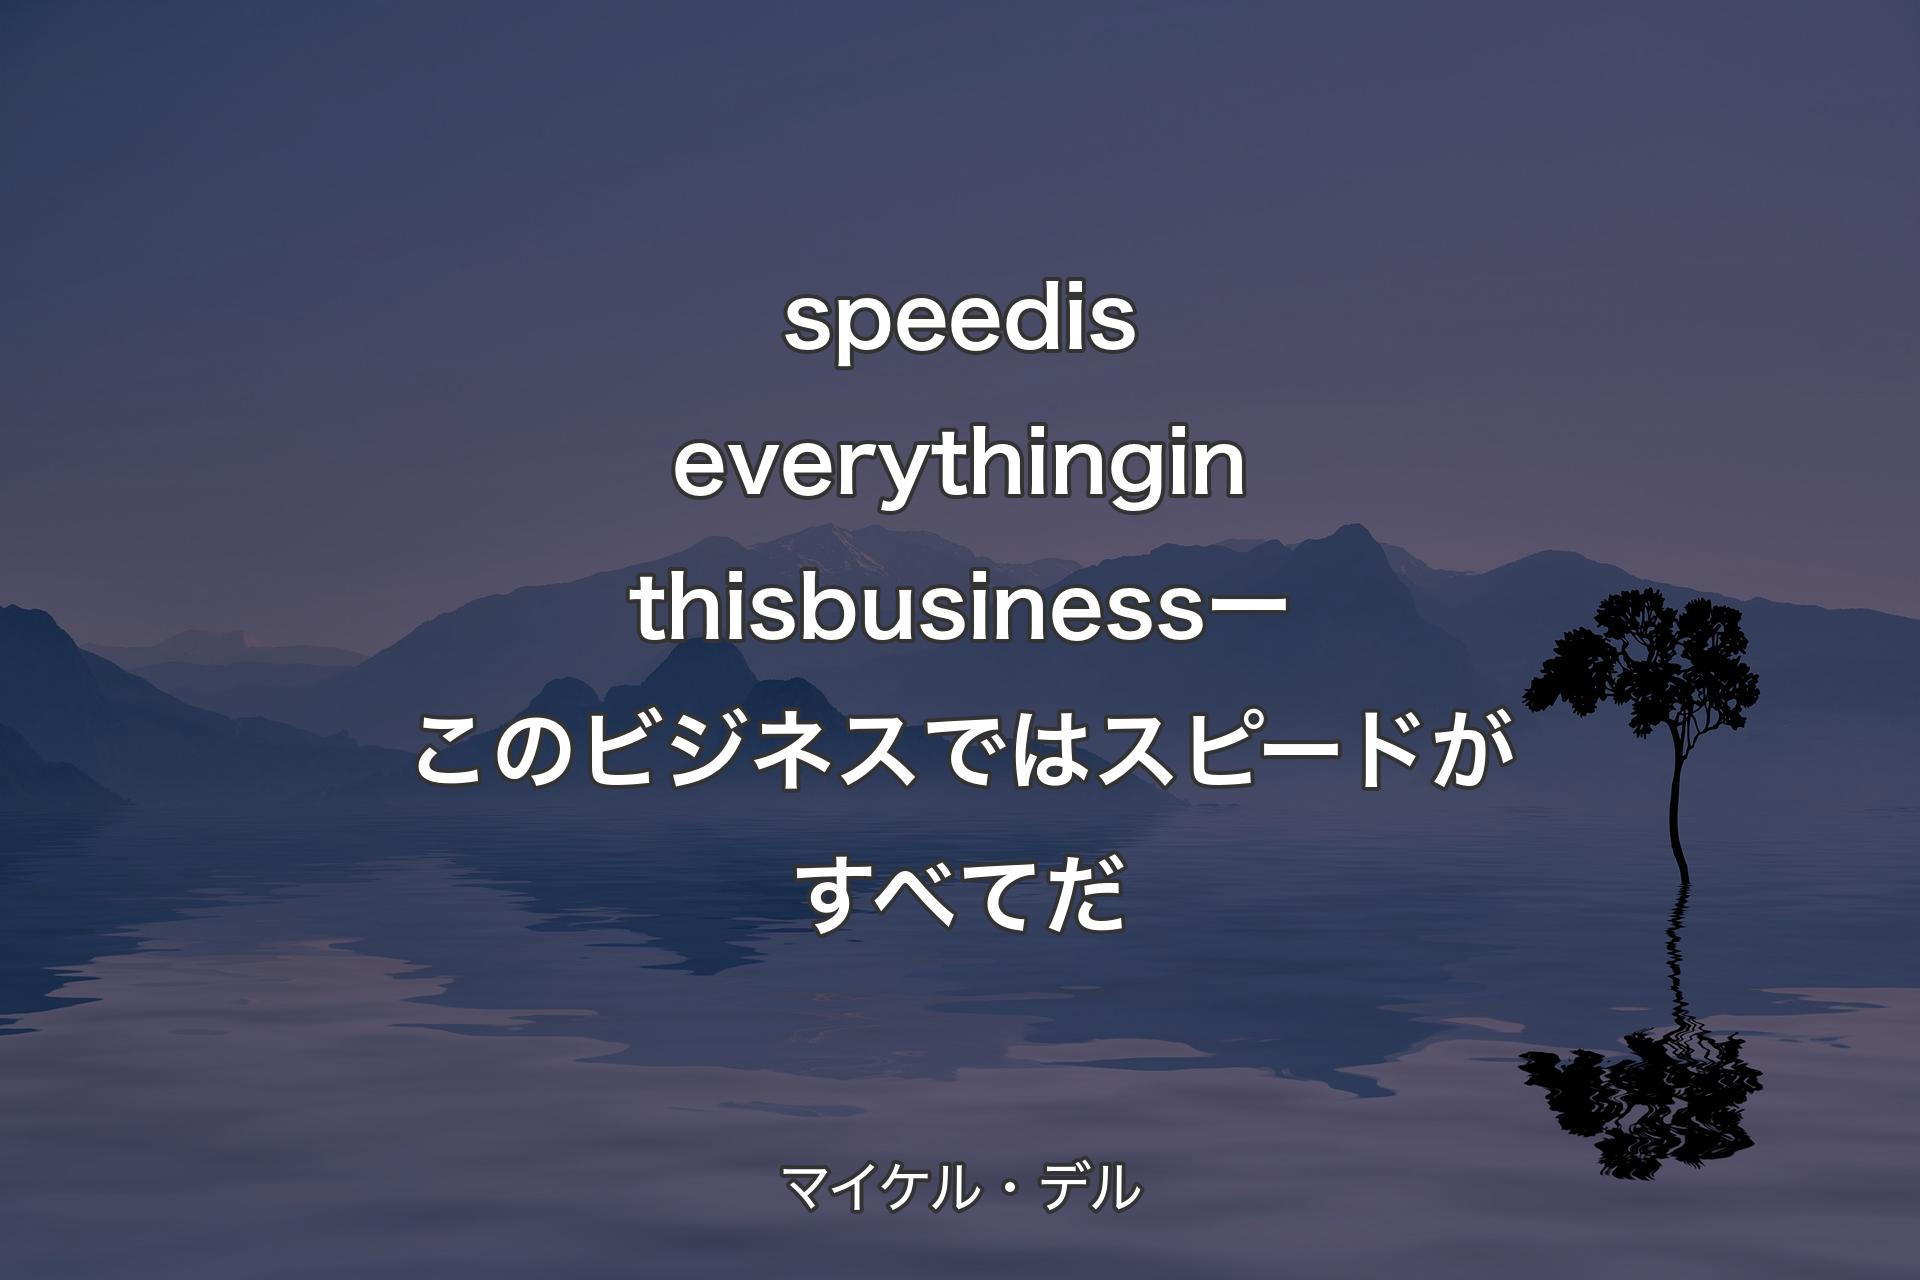 【背景4】speed is everything in this business ー このビジネスではスピードがすべてだ - マイケル・デル